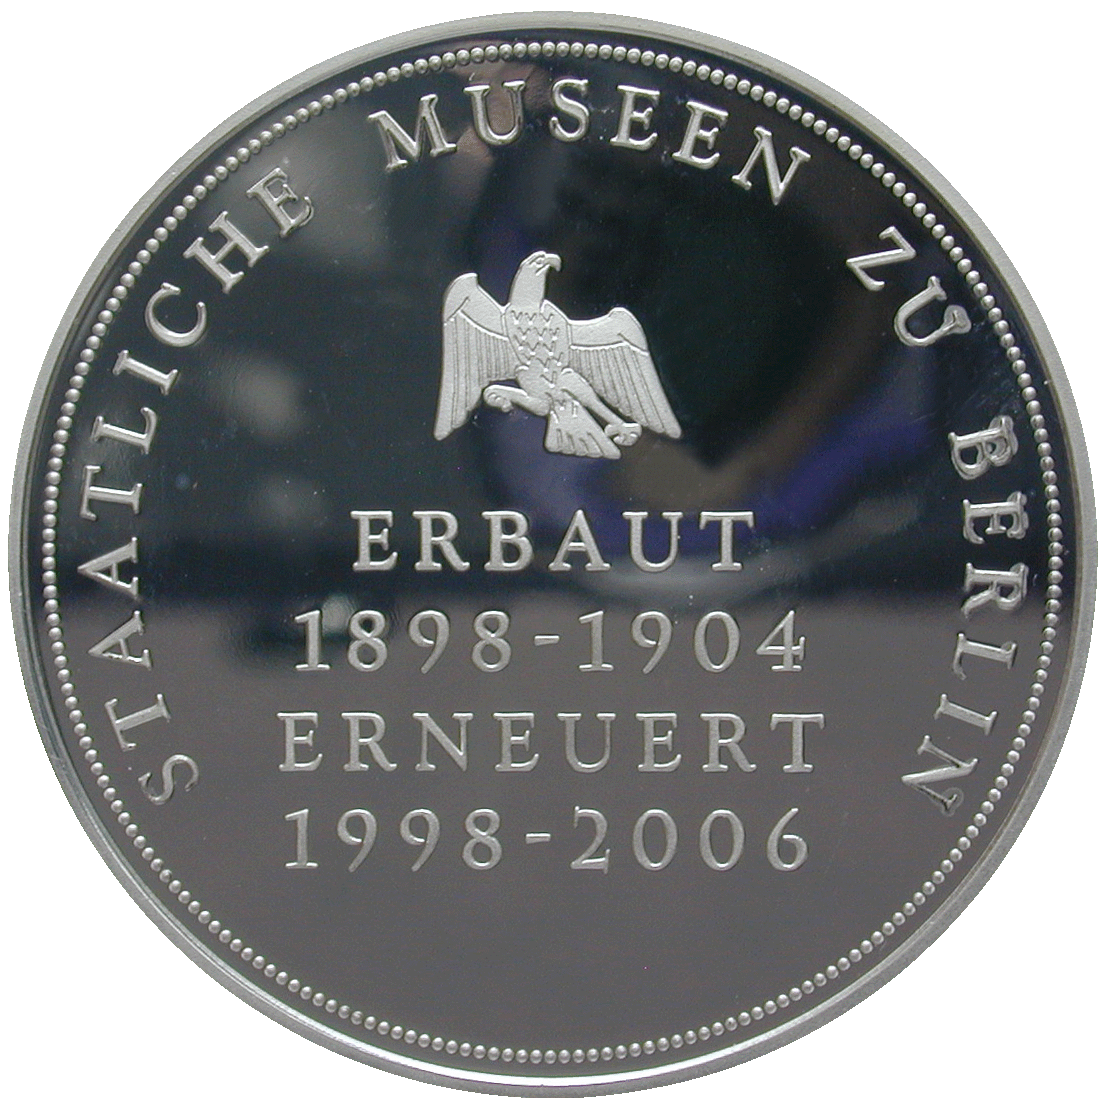 Bundesrepublik Deutschland, Medaille zur Neueröffnung des Bode-Museums Berlin (reverse)